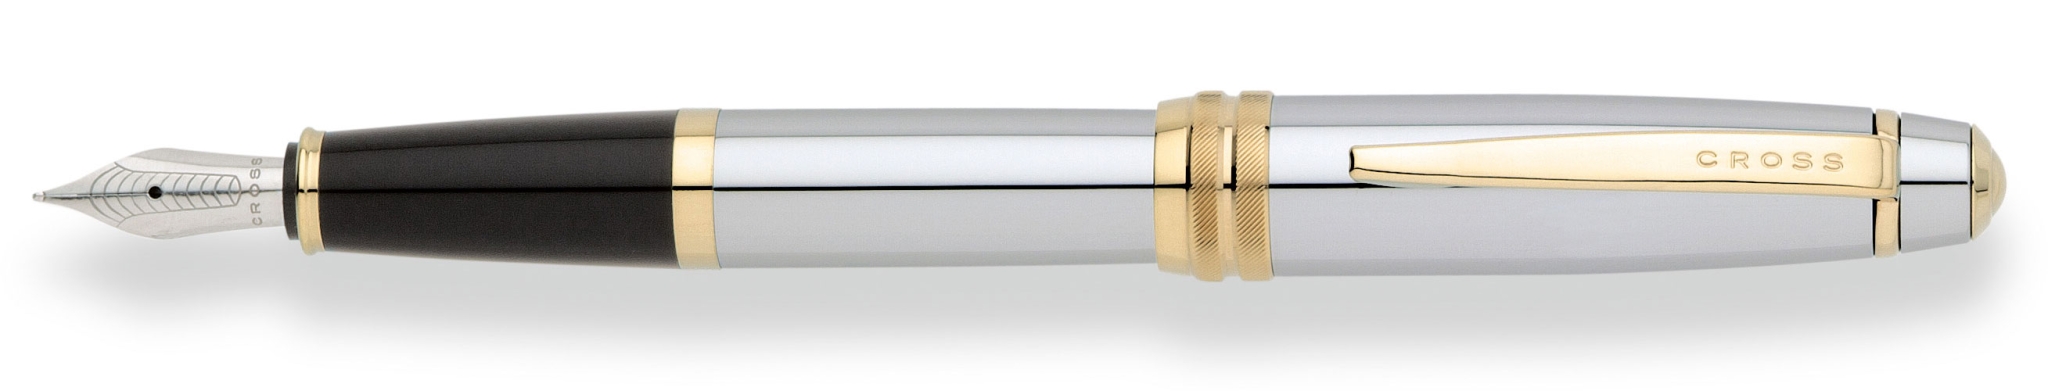 Перьевая ручка Cross Bailey. Цвет - серебристый с золотистой отделкой., серебристый, латунь, нержавеющая сталь